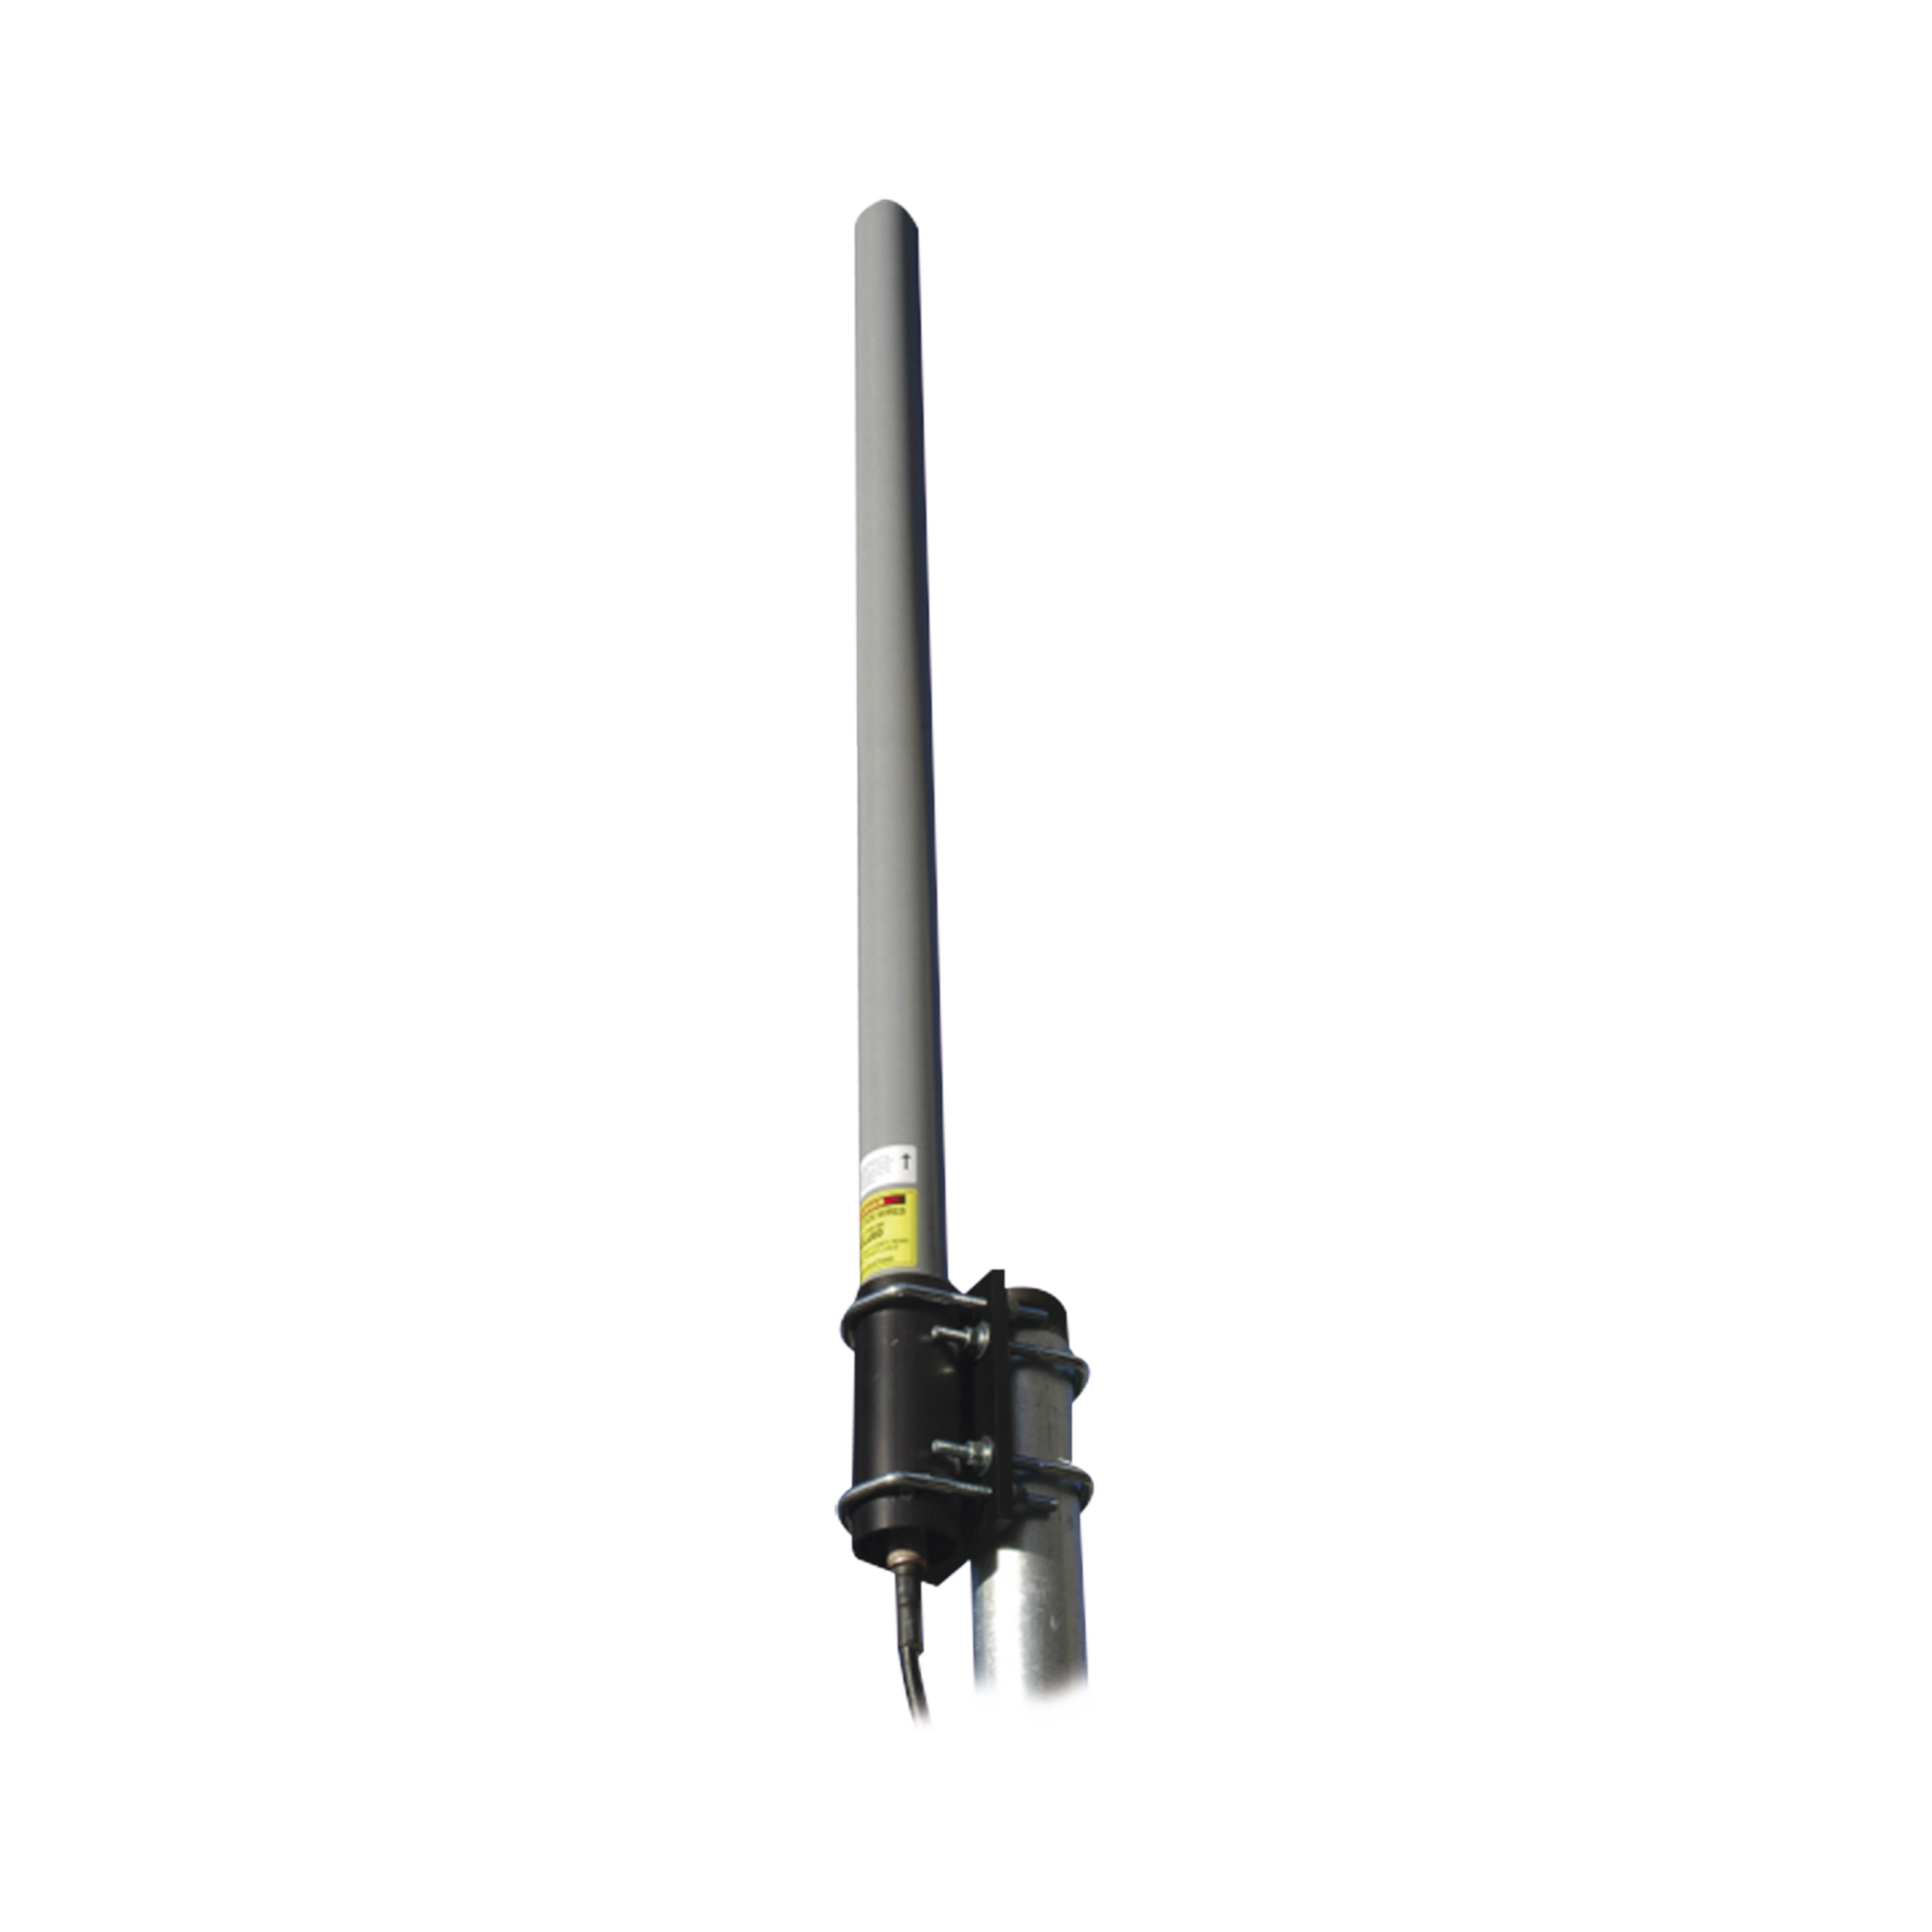 Antena Omnidireccional para cnReach 902-928 Mhz, Polarización Vertical, Ganancia 5 dBi (NBN500044AGL)